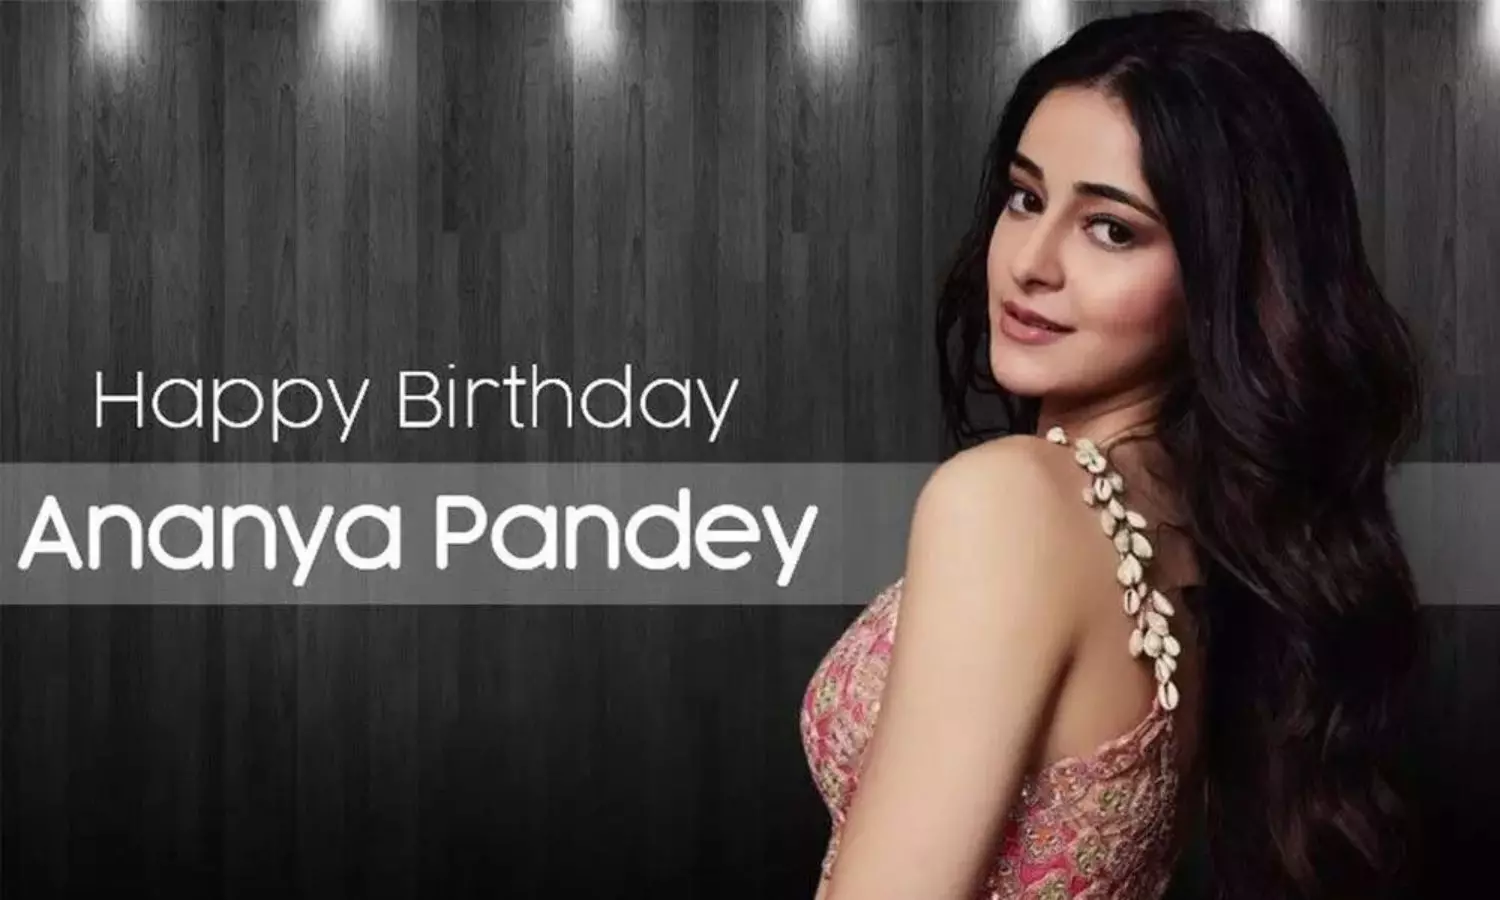 Ananya Pandey Birthday